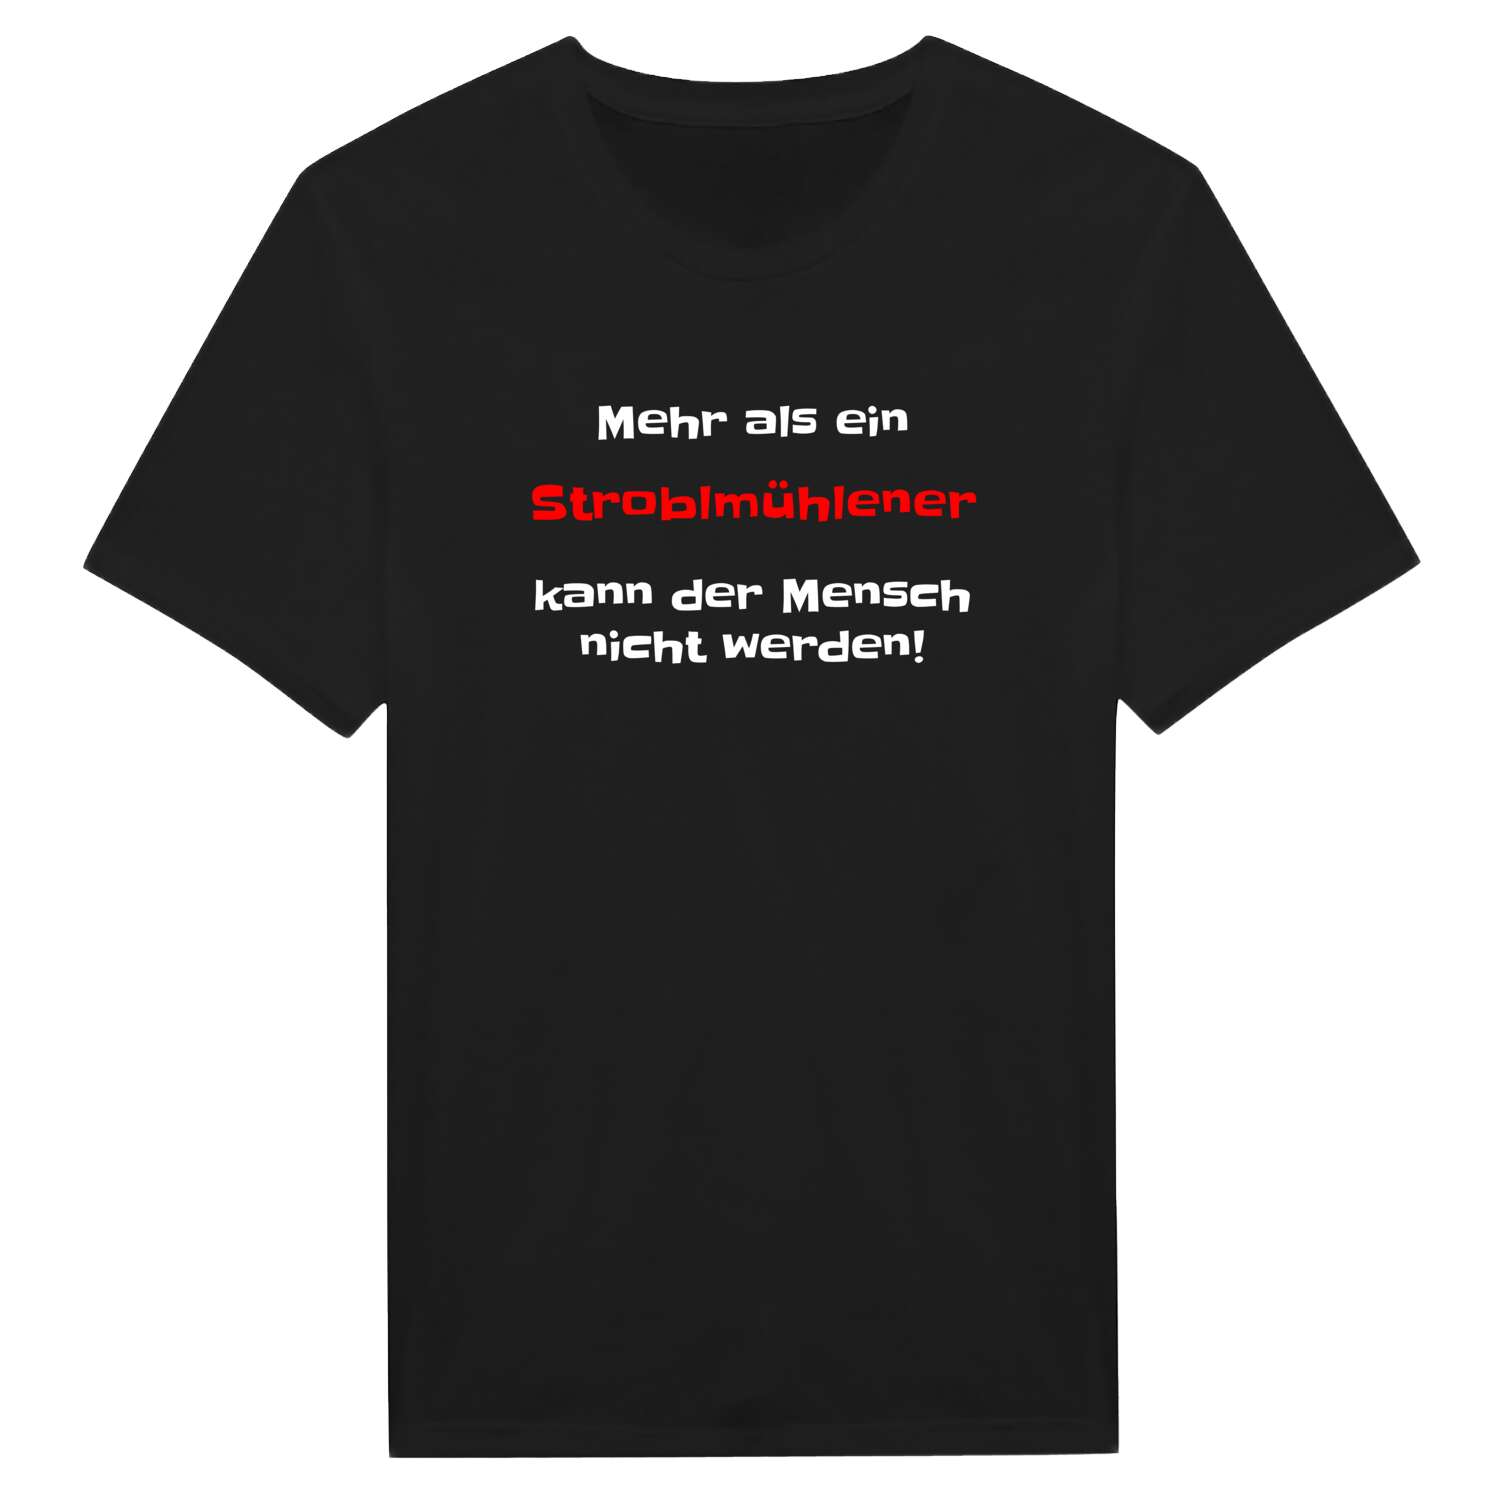 Stroblmühle T-Shirt »Mehr als ein«